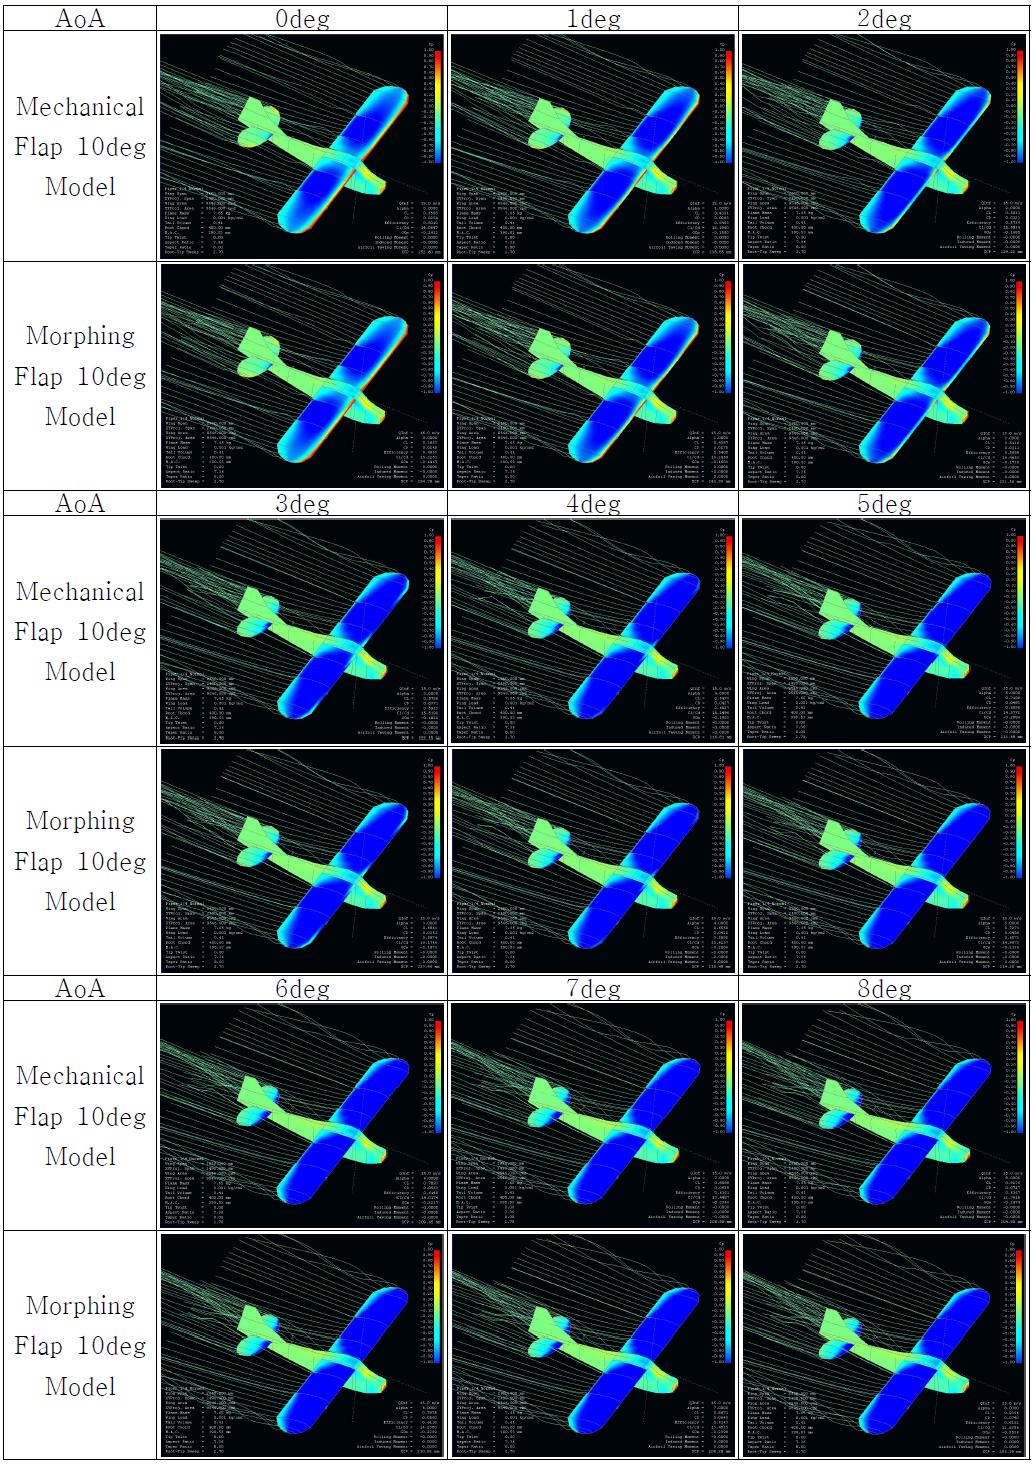 Full Model Simulation (Cp) : Mechanical Flap 10deg vs. Morphing Flap 10deg